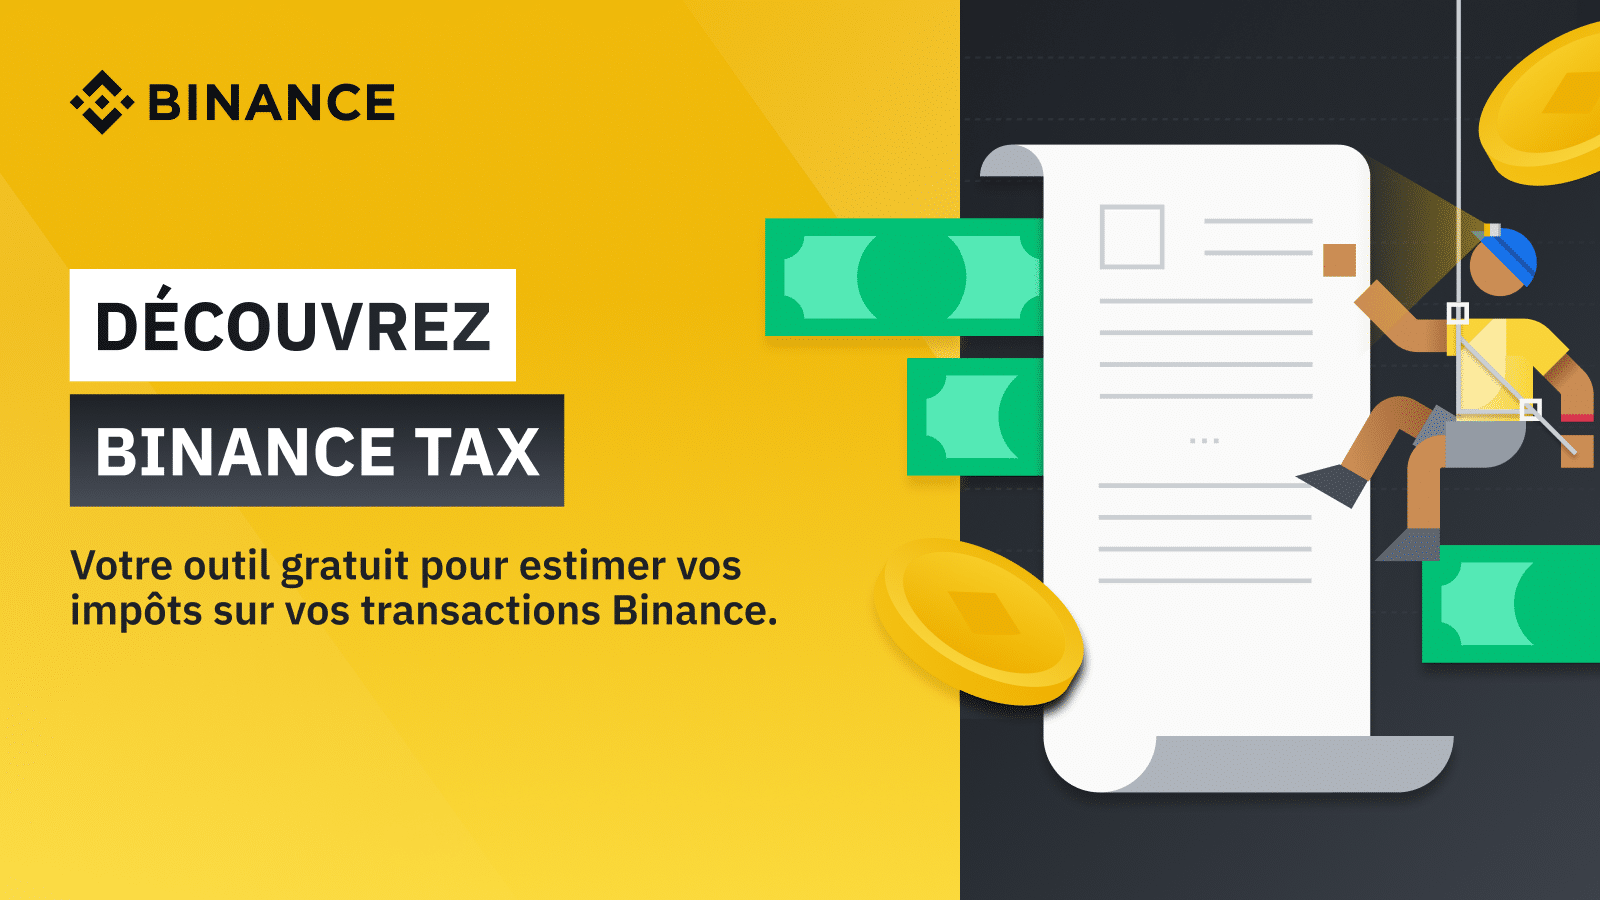 Binance Tax, un service d’aide à la déclaration d’impôts